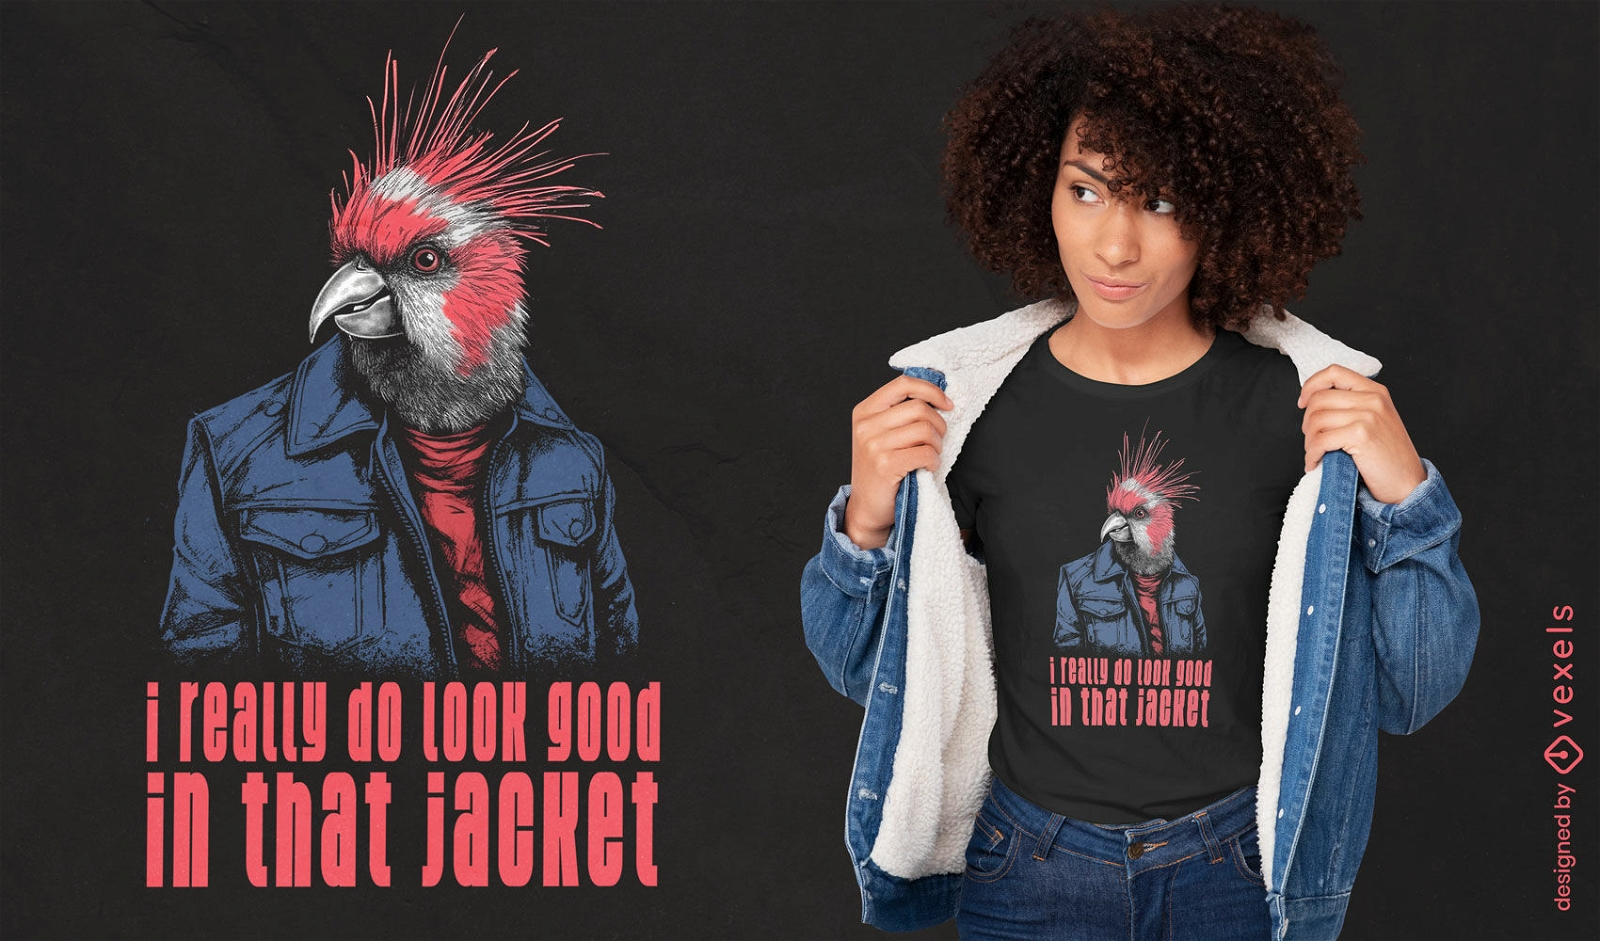 Cockatoo quote t-shirt design